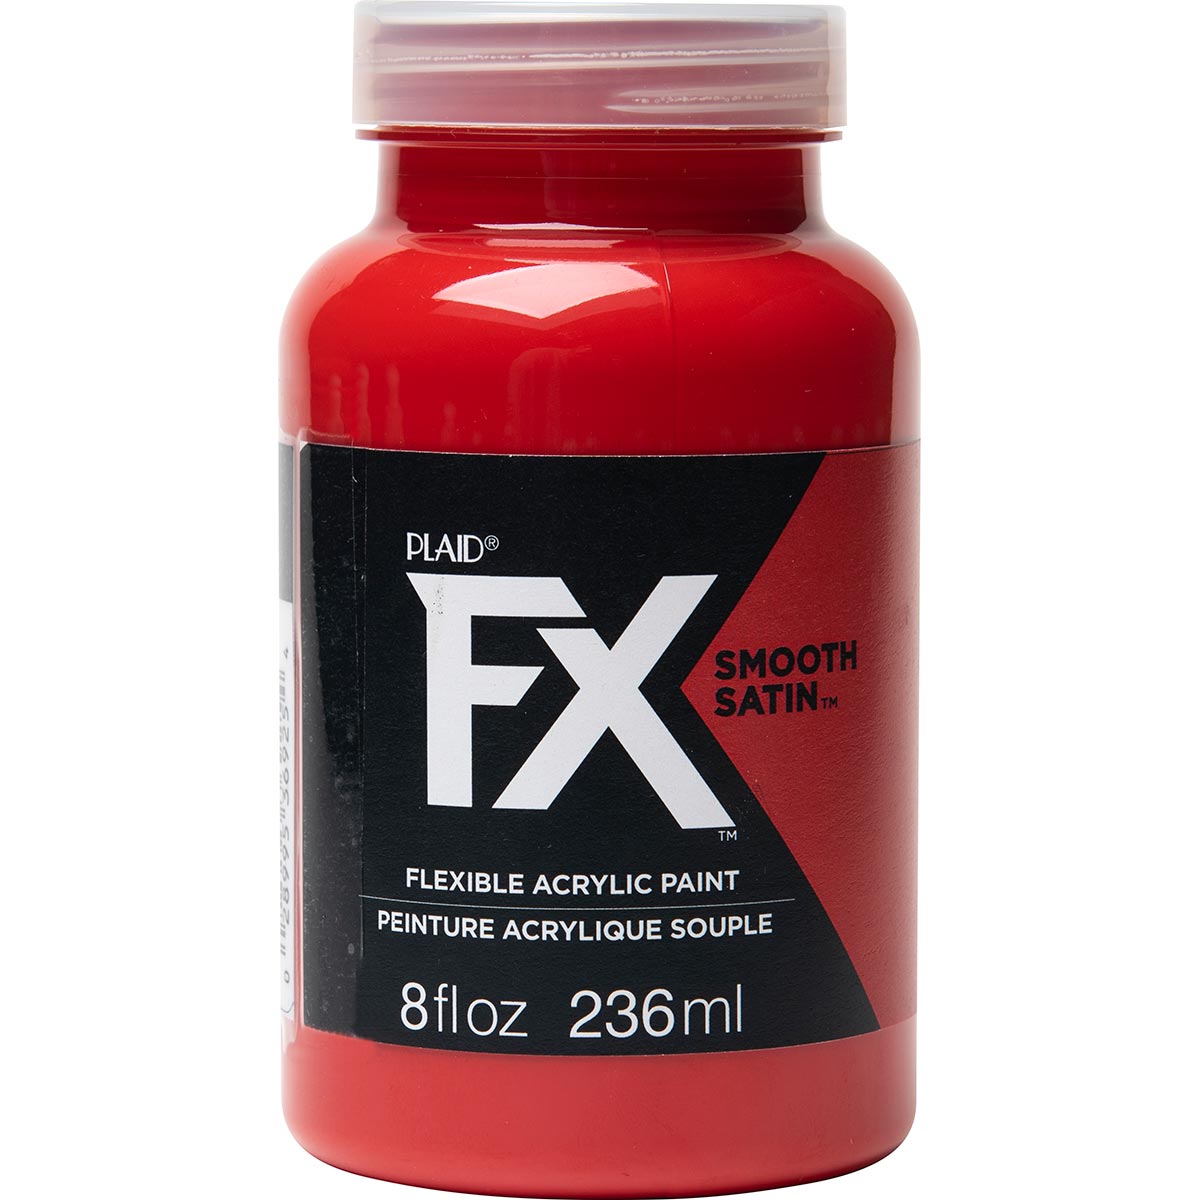 PlaidFX Smooth Satin Flexible Acrylic Paint - Pyro, 8 oz. - 36925